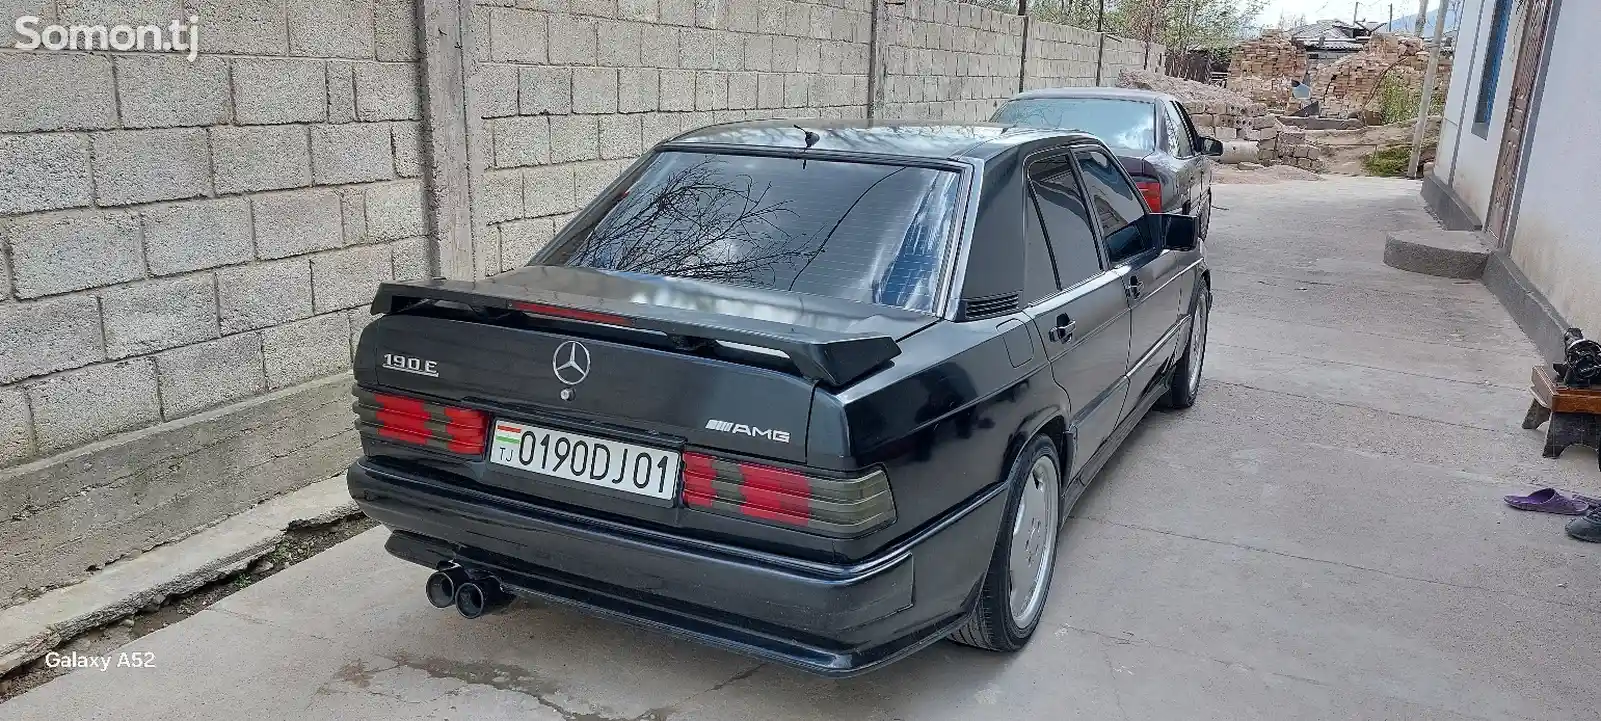 Mercedes-Benz W201, 1991-16